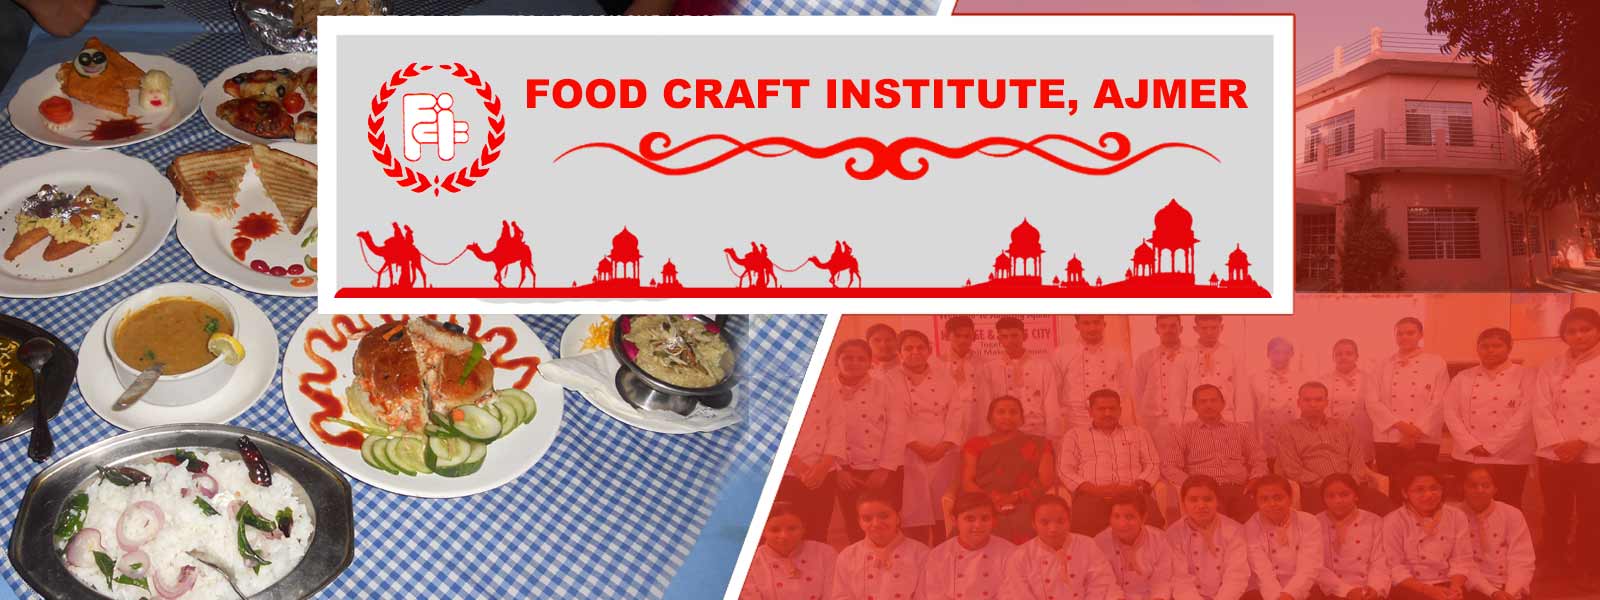 food craft institute, ajmer admissions 2018